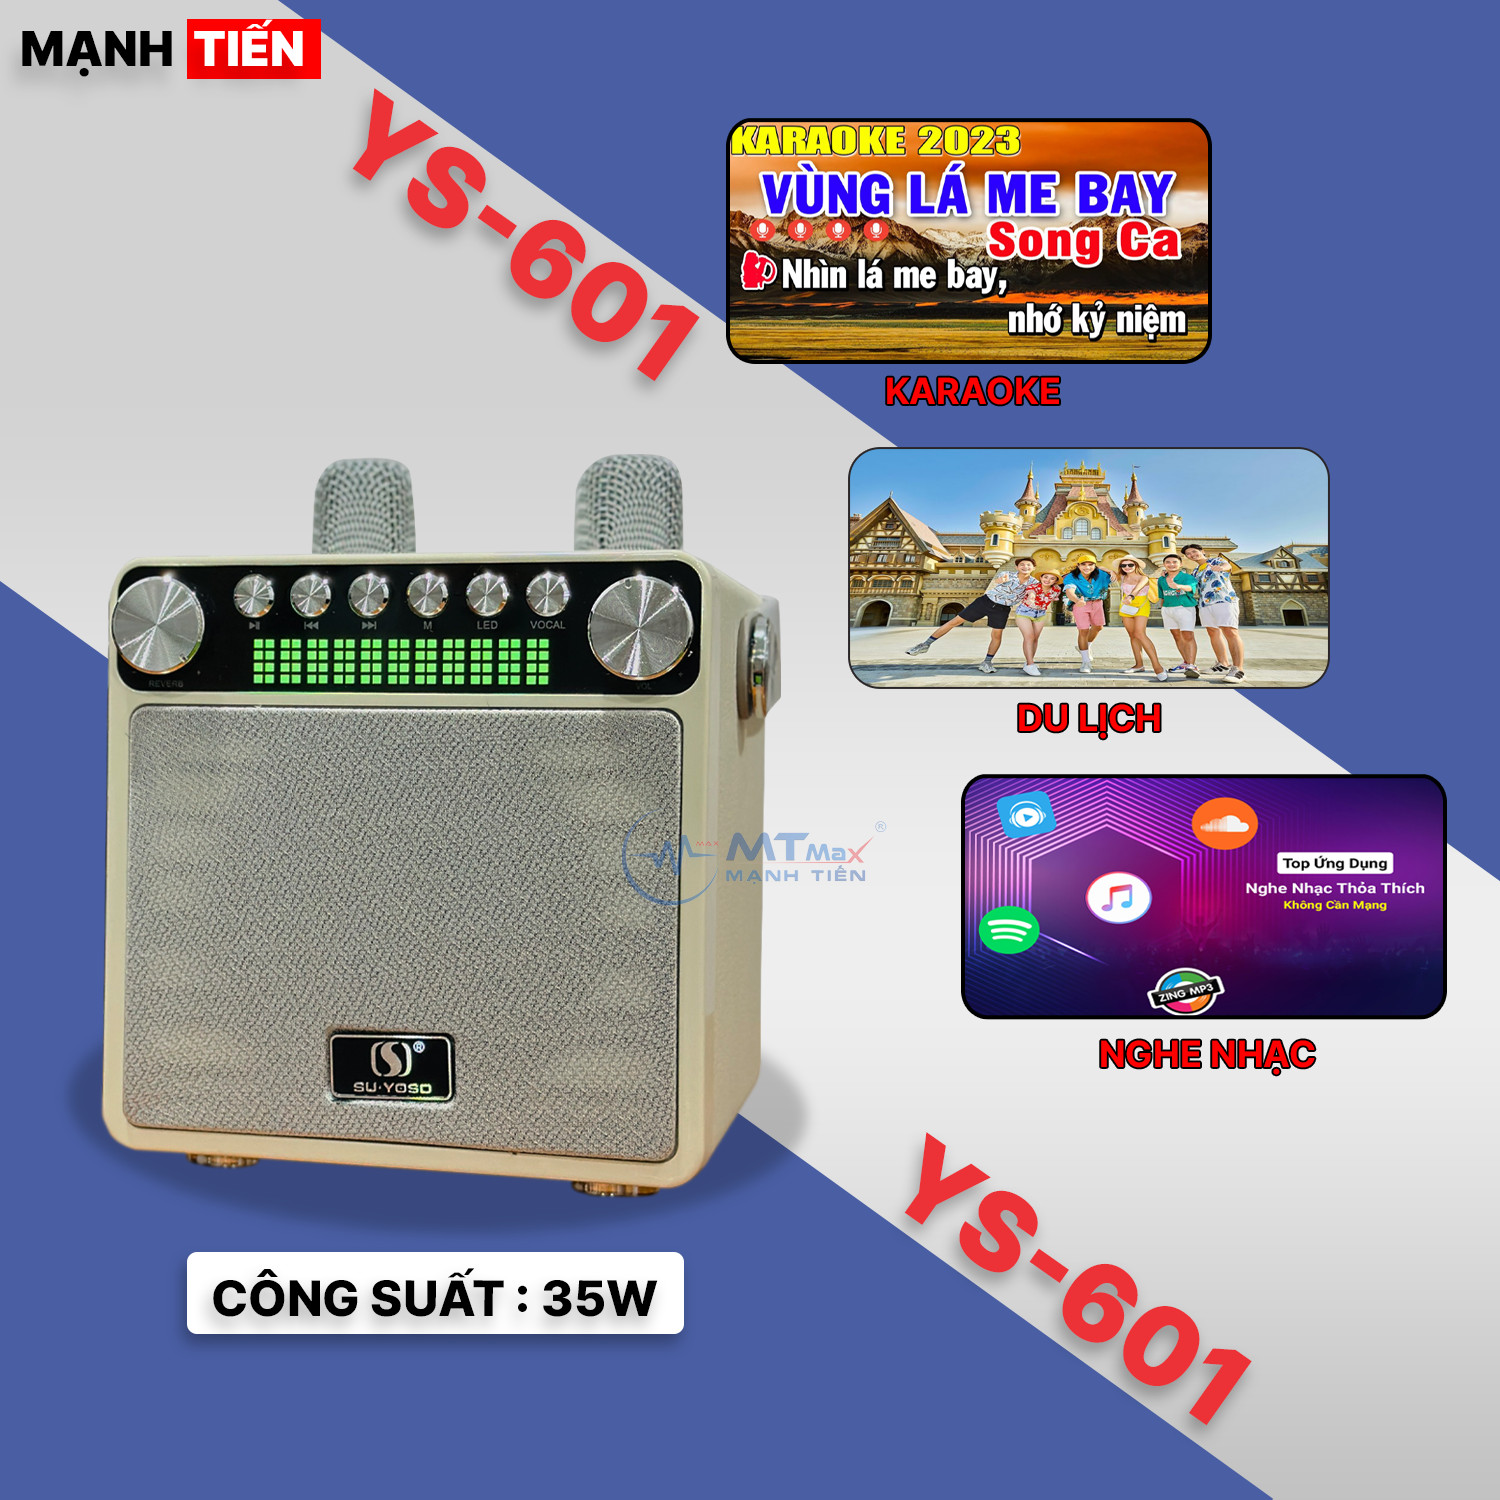 Loa Bluetooth Mini YS-601, Công Suất 35W, Nhỏ Gọn, Âm Thanh Cực Hay, Bass Căng, Đi Kèm 2 Micro Karaoke Thay Đổi Giọng Nói, Bảo Hành 6 Tháng Hàng Chính Hãng